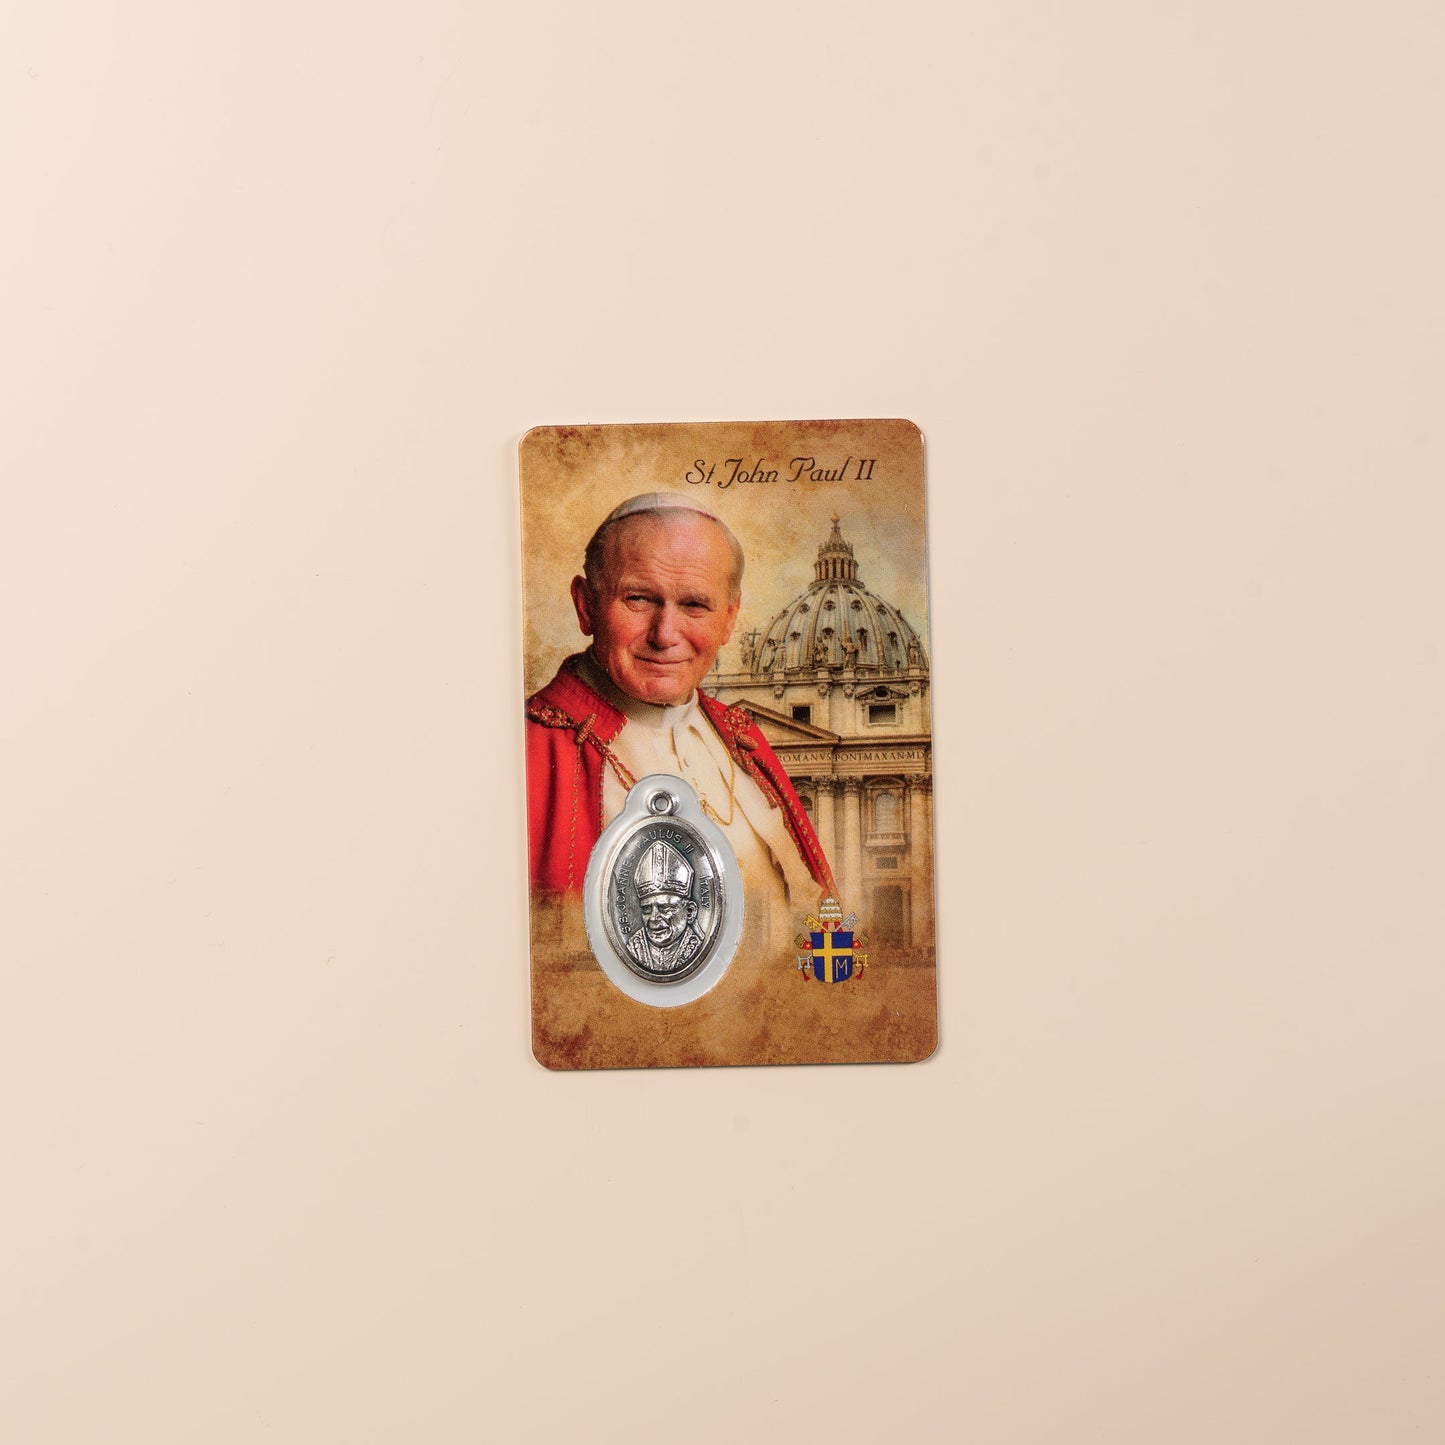 Saint John Paul II prayer card